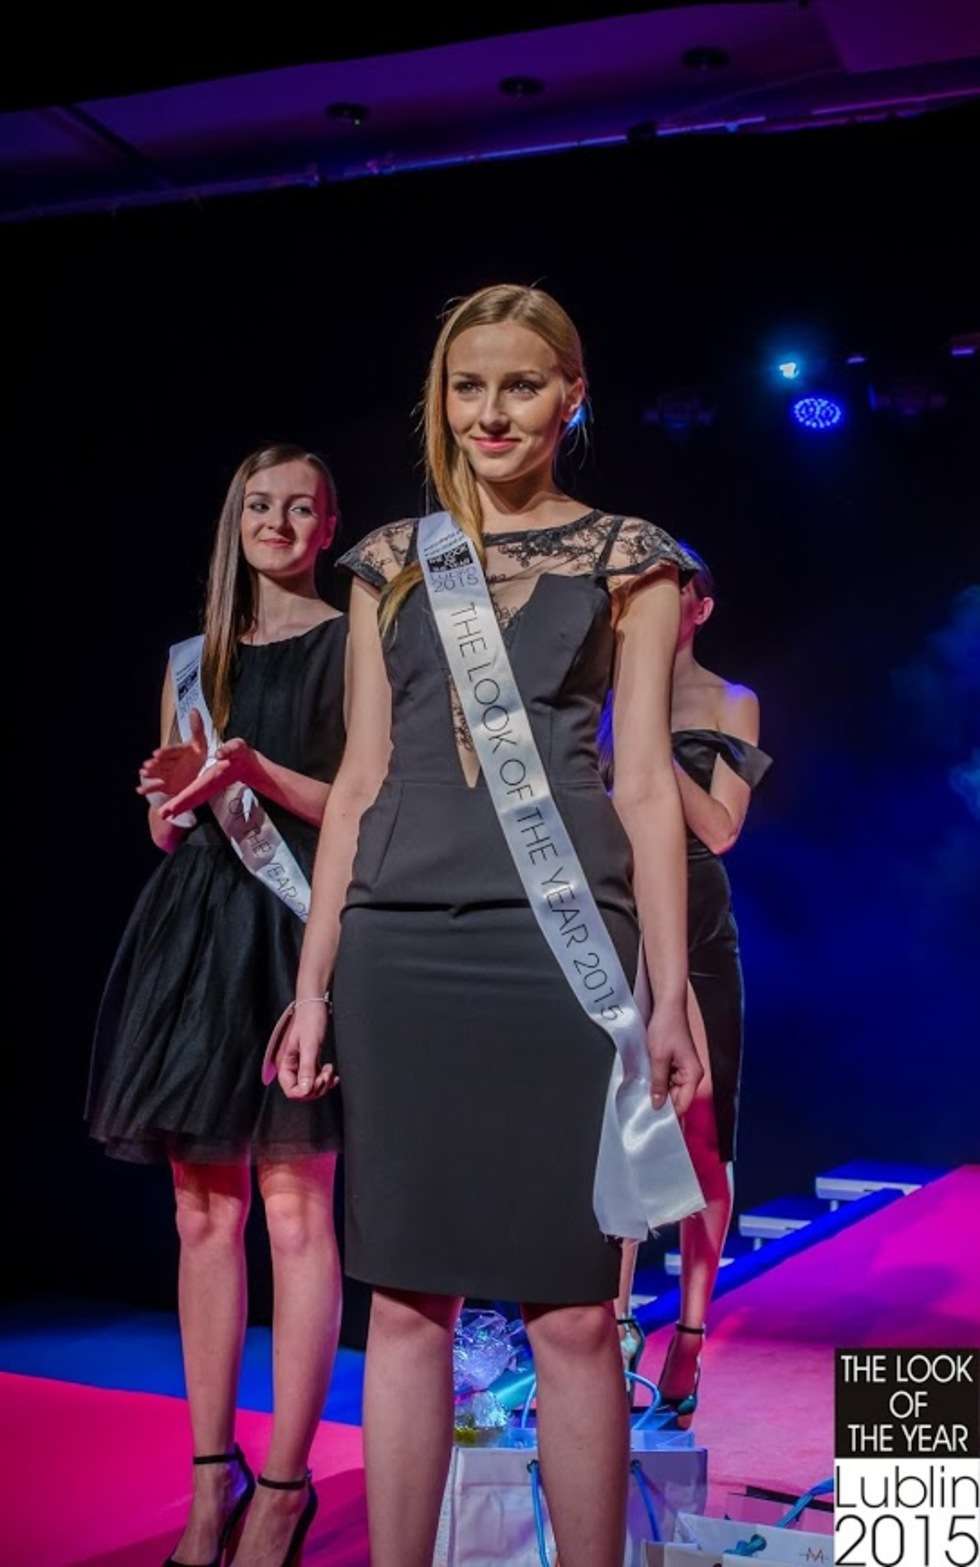  Finał konkursu The Look of The Year Lublin 2015 (zdjęcie 2) - Autor: Maciej Kozłowski